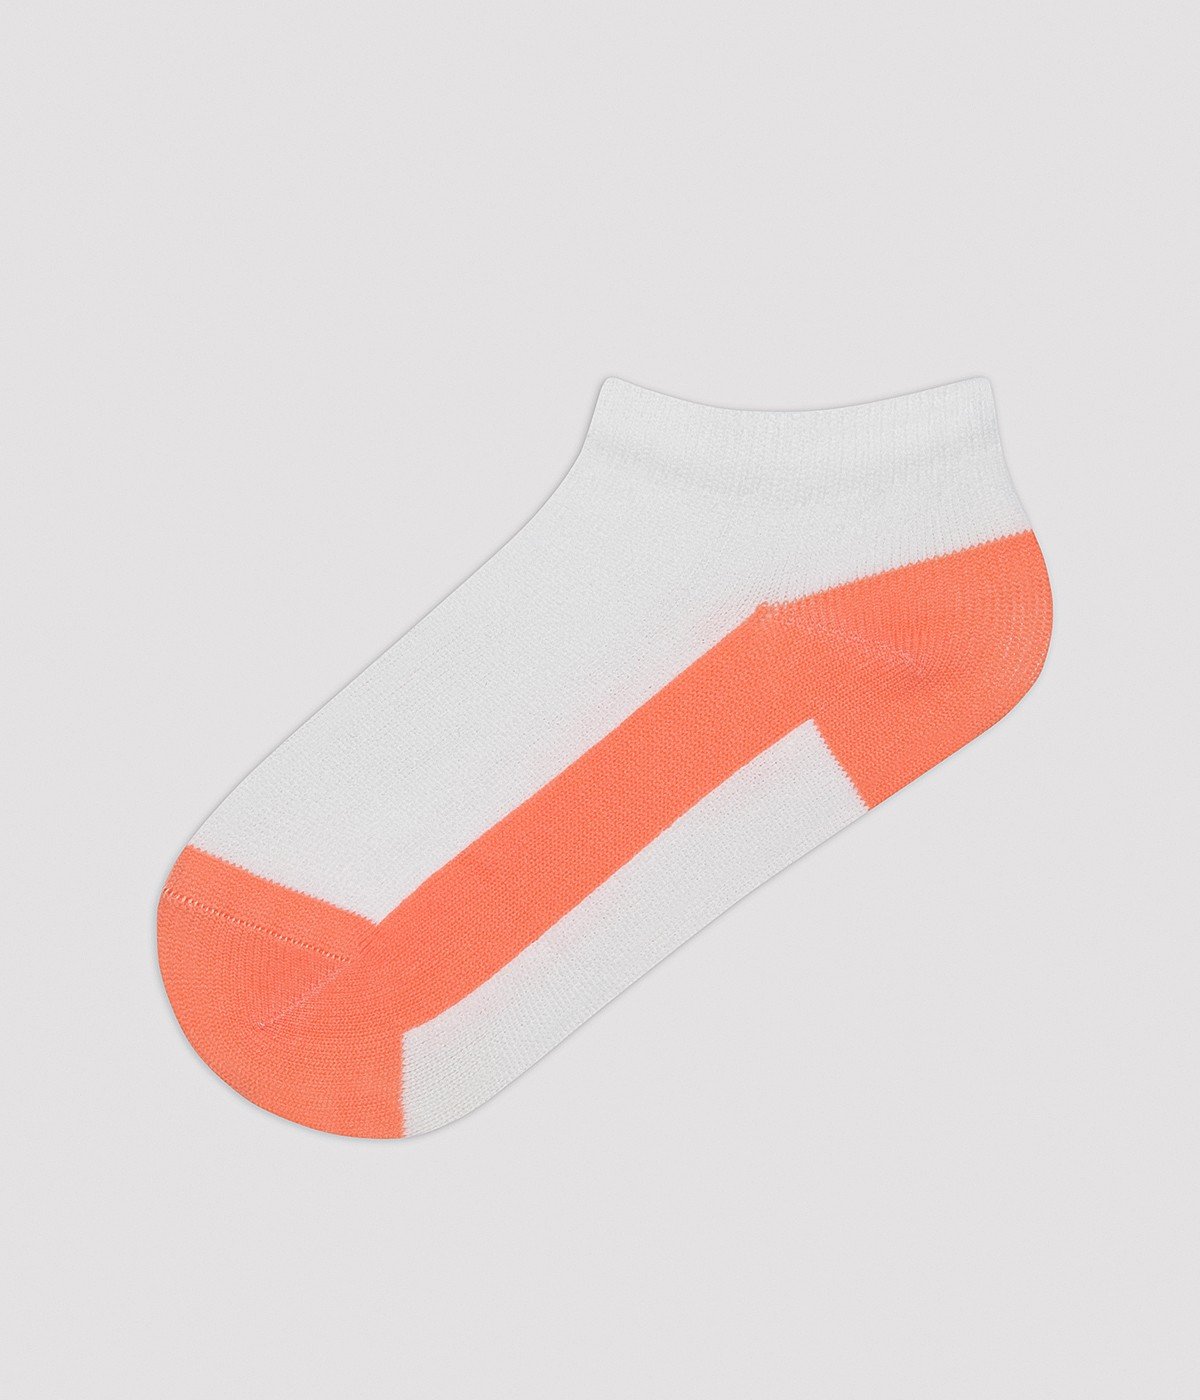 Boys Colorful 4in1 Liner Socks